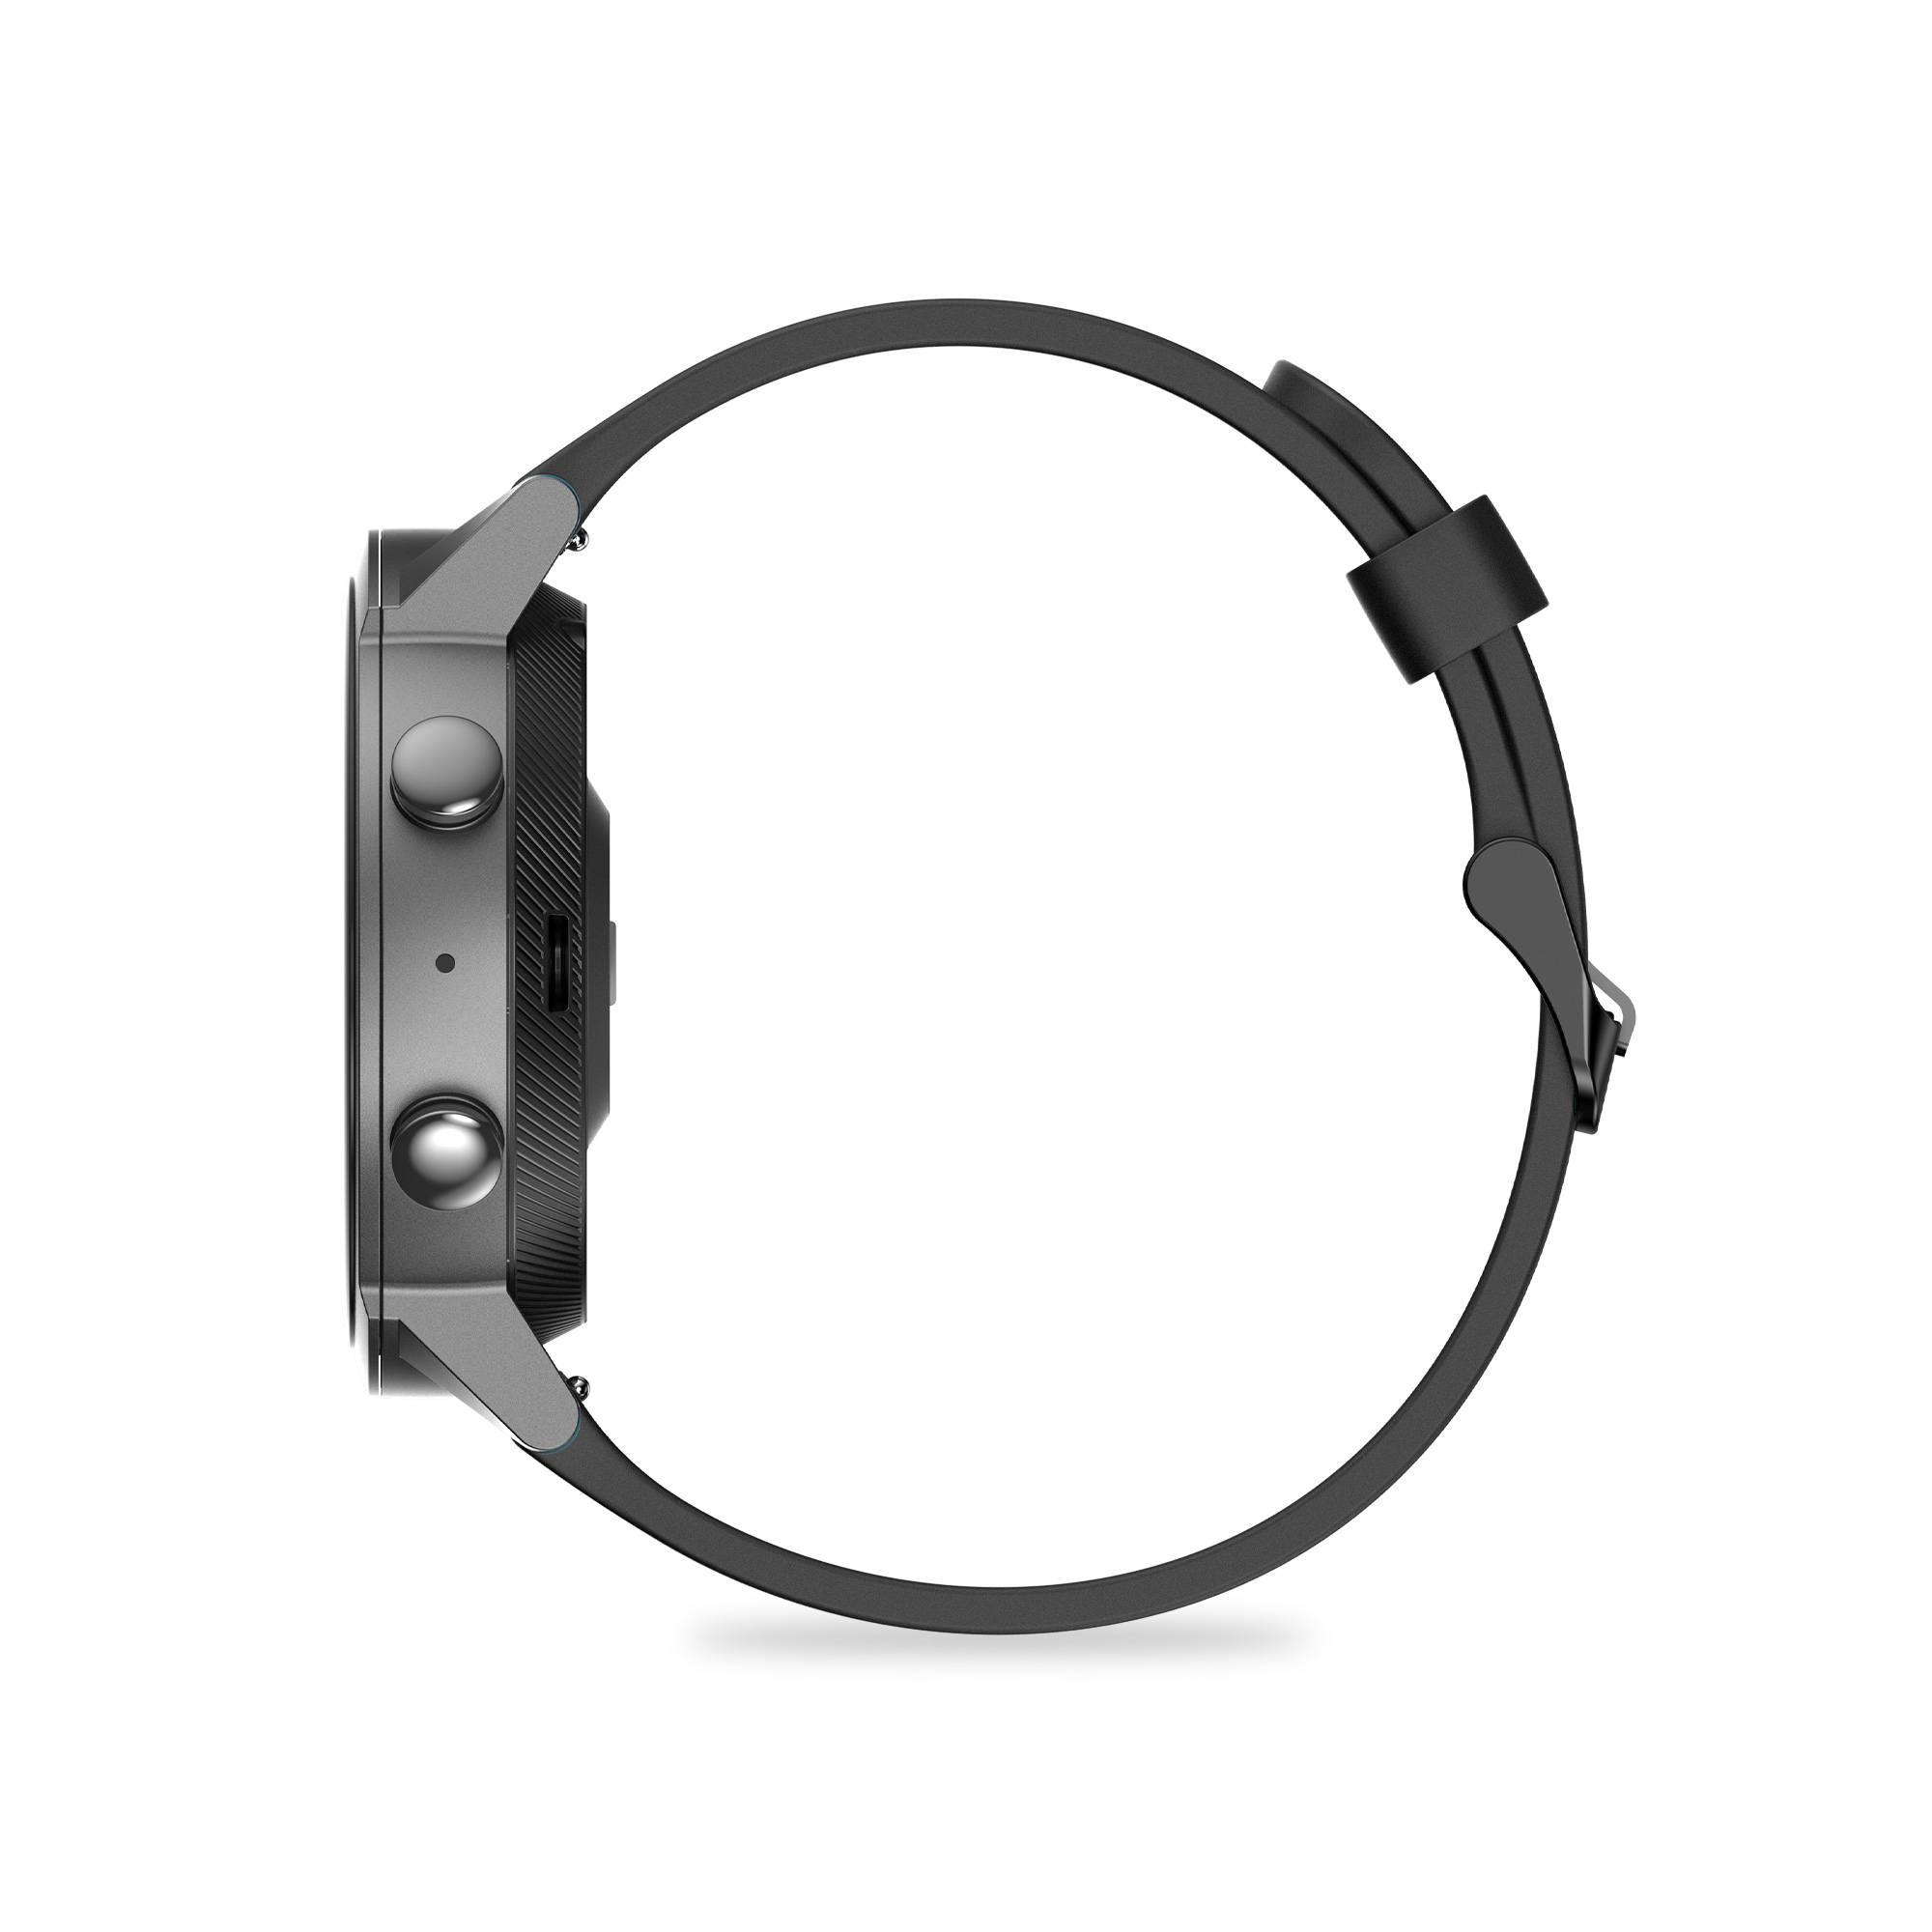 Smartwatch Mobvoi Tic Watch E3 Con Autonomía 45 Días Y Sumergible  MKP